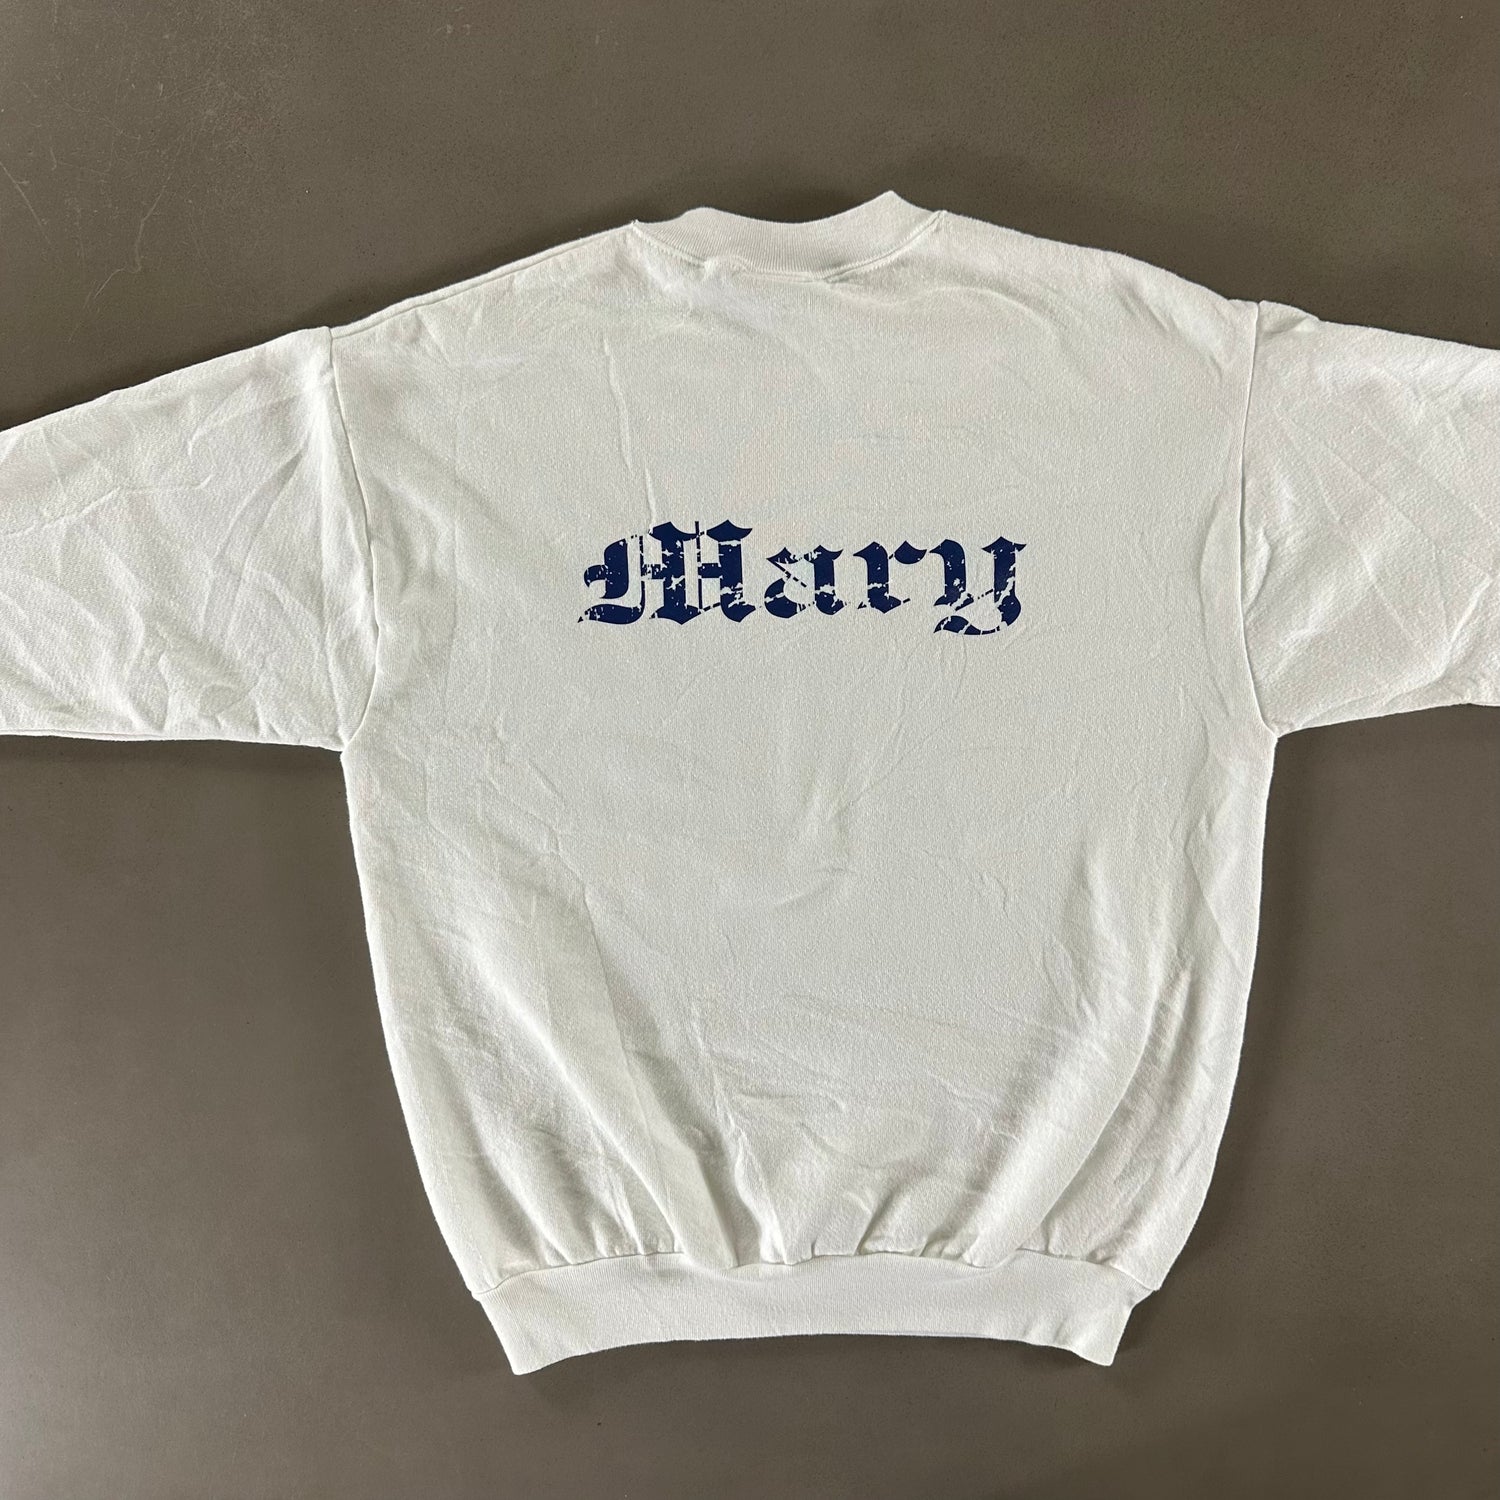 Vintage 1990s Harmonica Sweatshirt size Medium